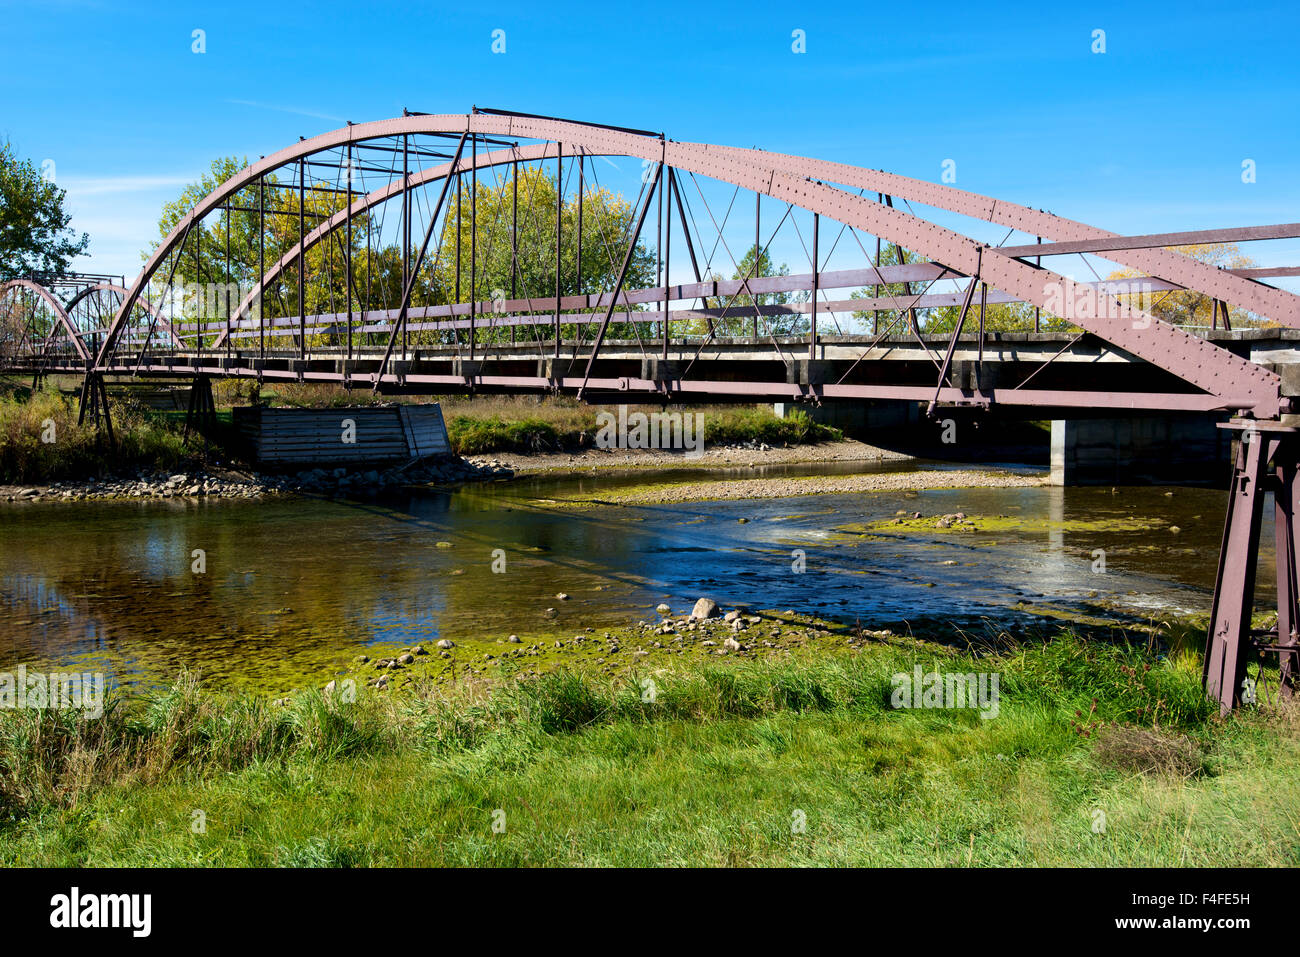 Il ponte di ferro o esercito vecchio ponte che attraversa il fiume Platte a Fort Laramie, fu costruito nel 1875 ed era un collegamento vitale tra impieghi militari e le Black Hills del Dakota del Nord. (Grandi dimensioni formato disponibile) Foto Stock